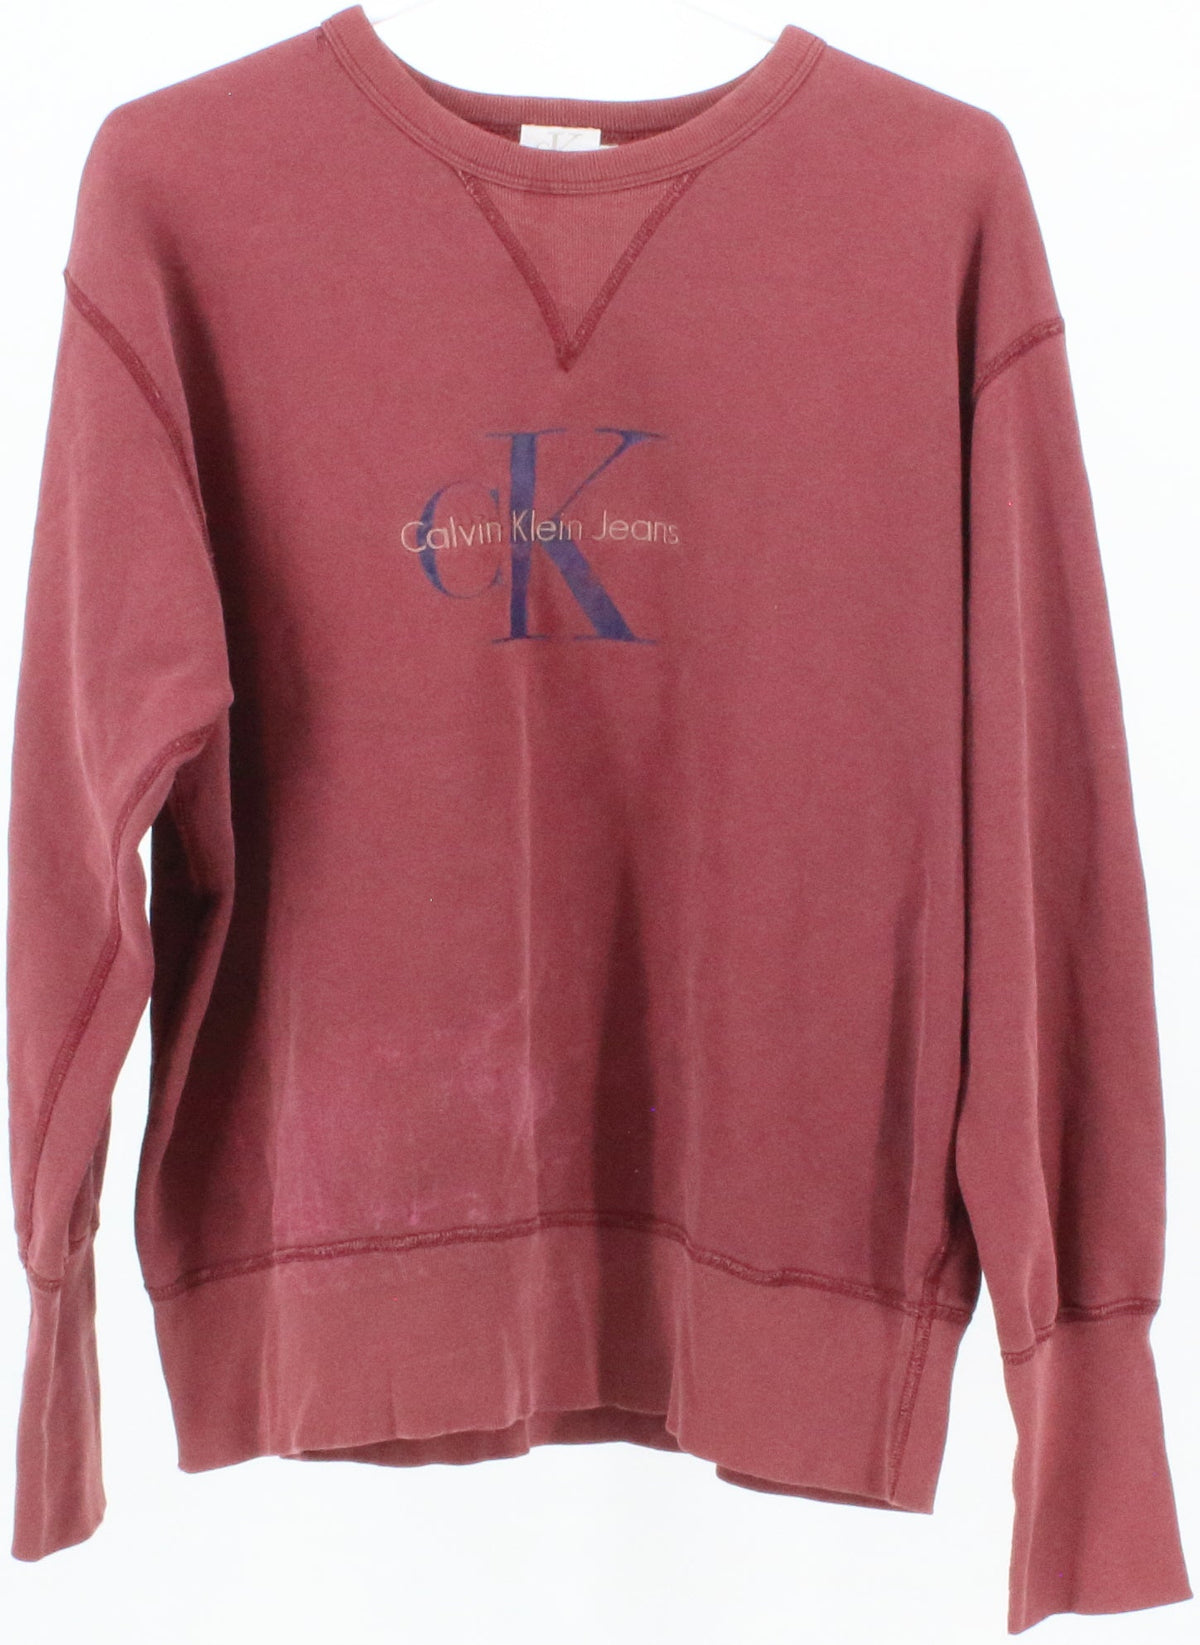 Calvin Klein Jeans Burgundy Sweatshirt